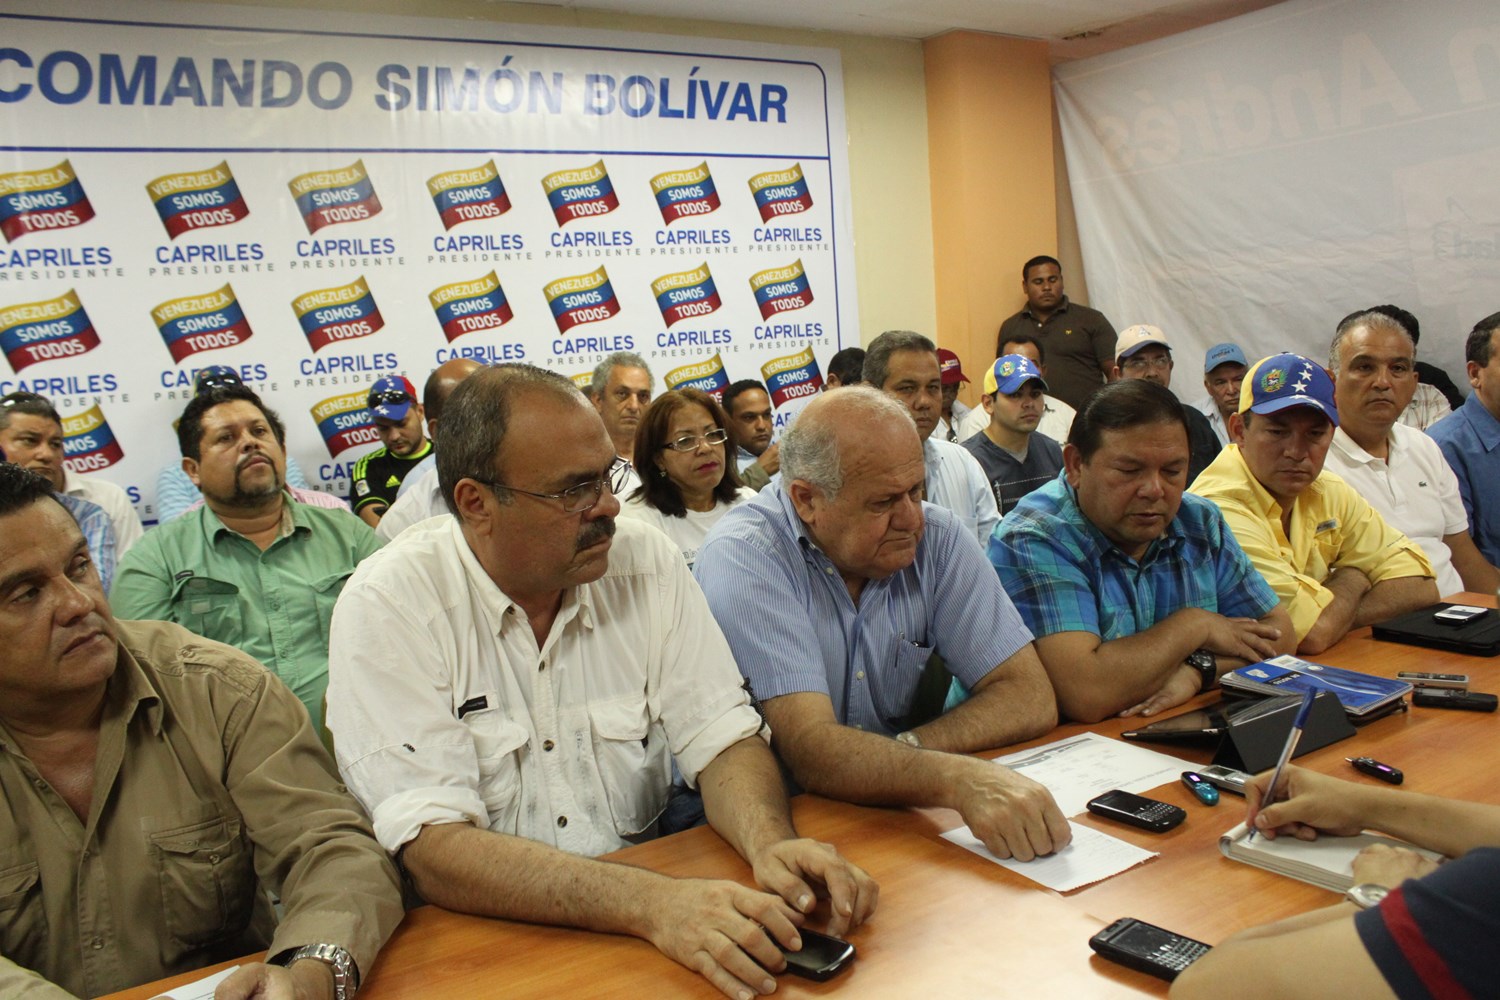 Representante del Comando Simón Bolívar de Valles del Tuy fue detenido ilegalmente